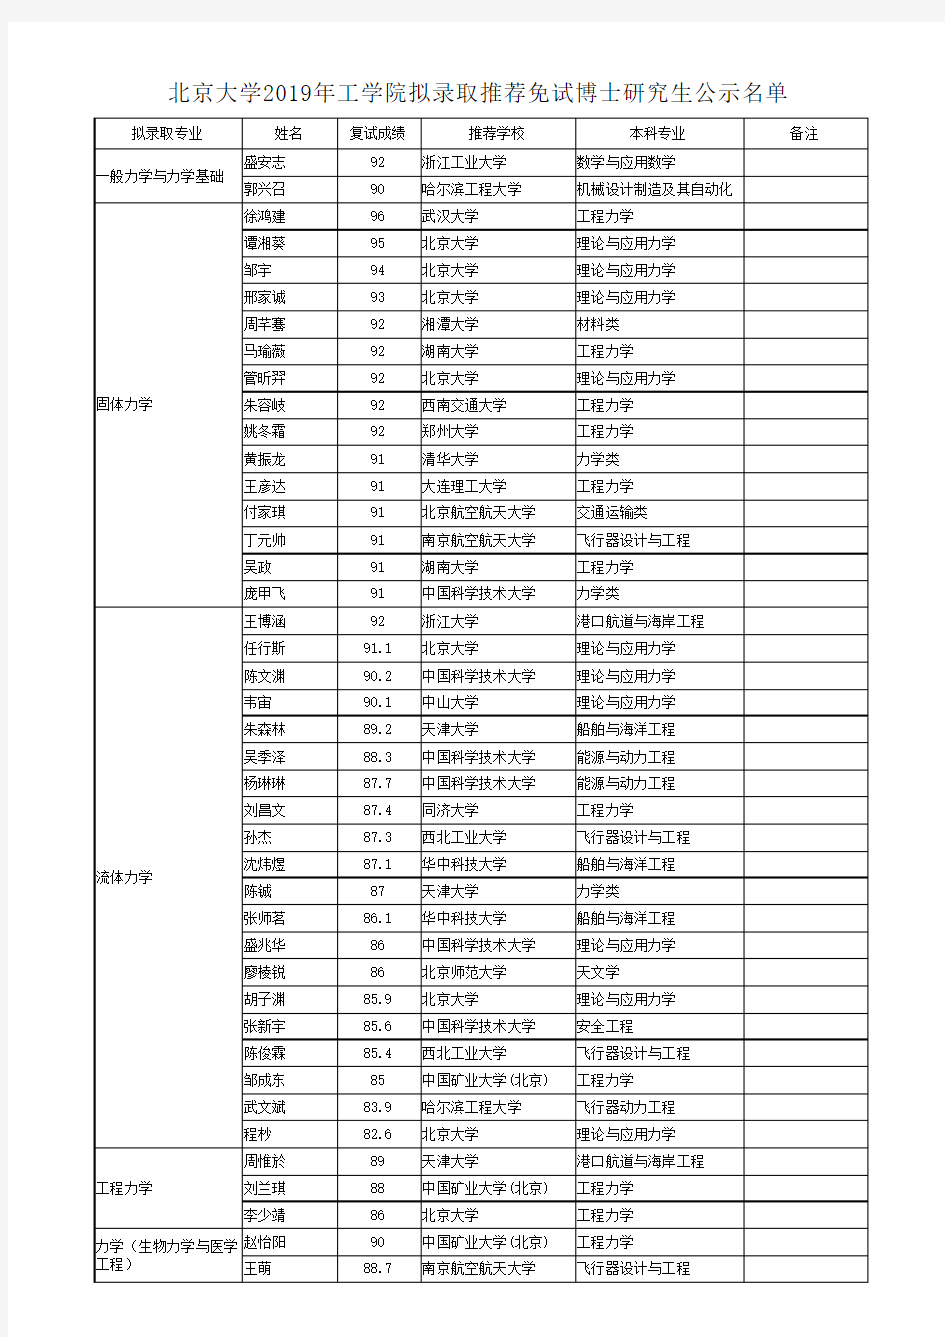 北京大学2019年工学院拟录取推荐免试博士研究生公示名单